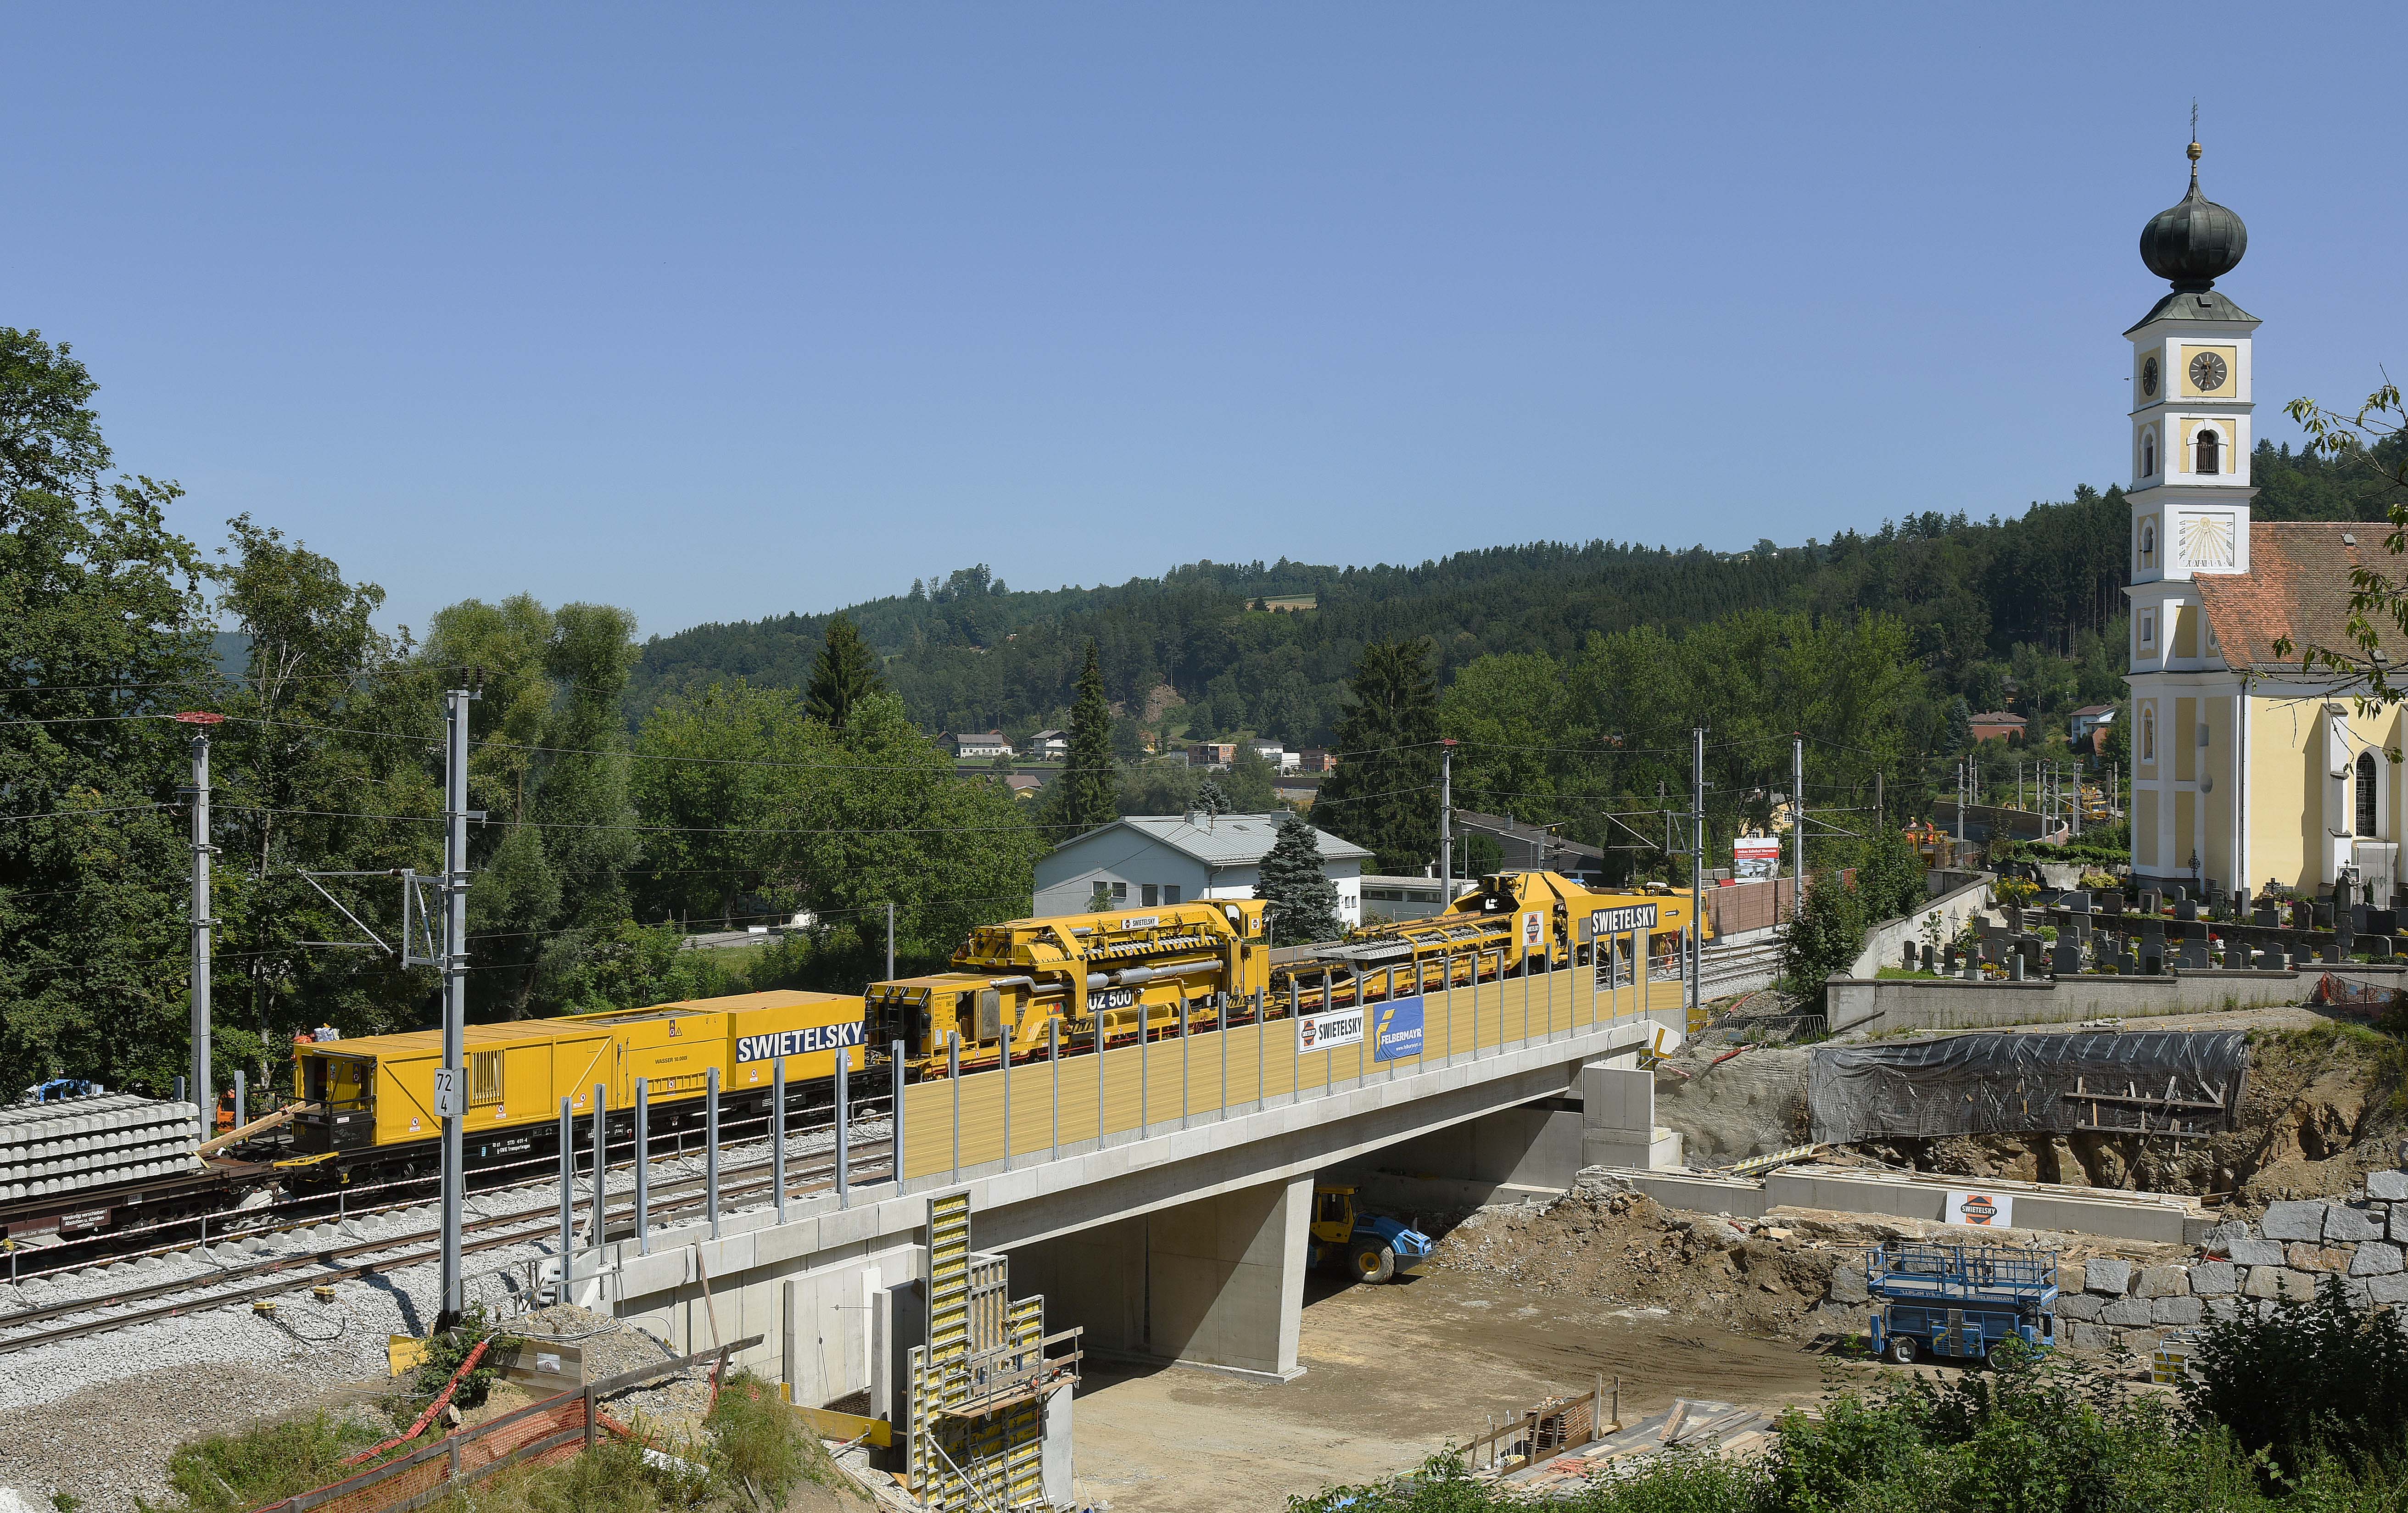 Umbau Bahnhof Wernstein - Railway construction